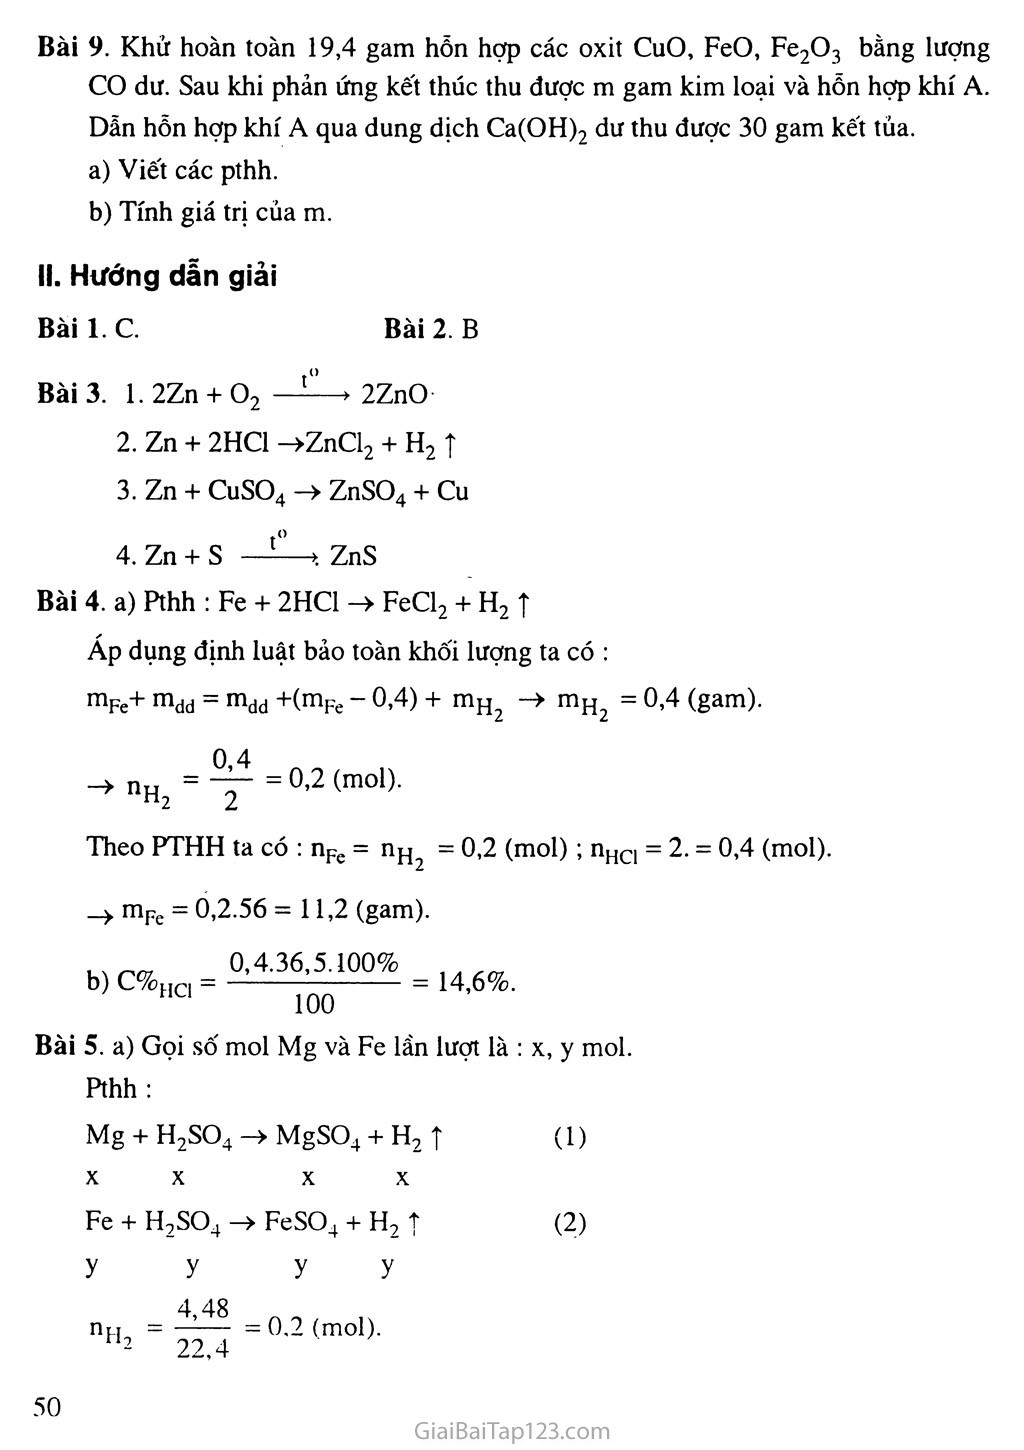 Bài 16: Tính chất hóa học của kim loại trang 4